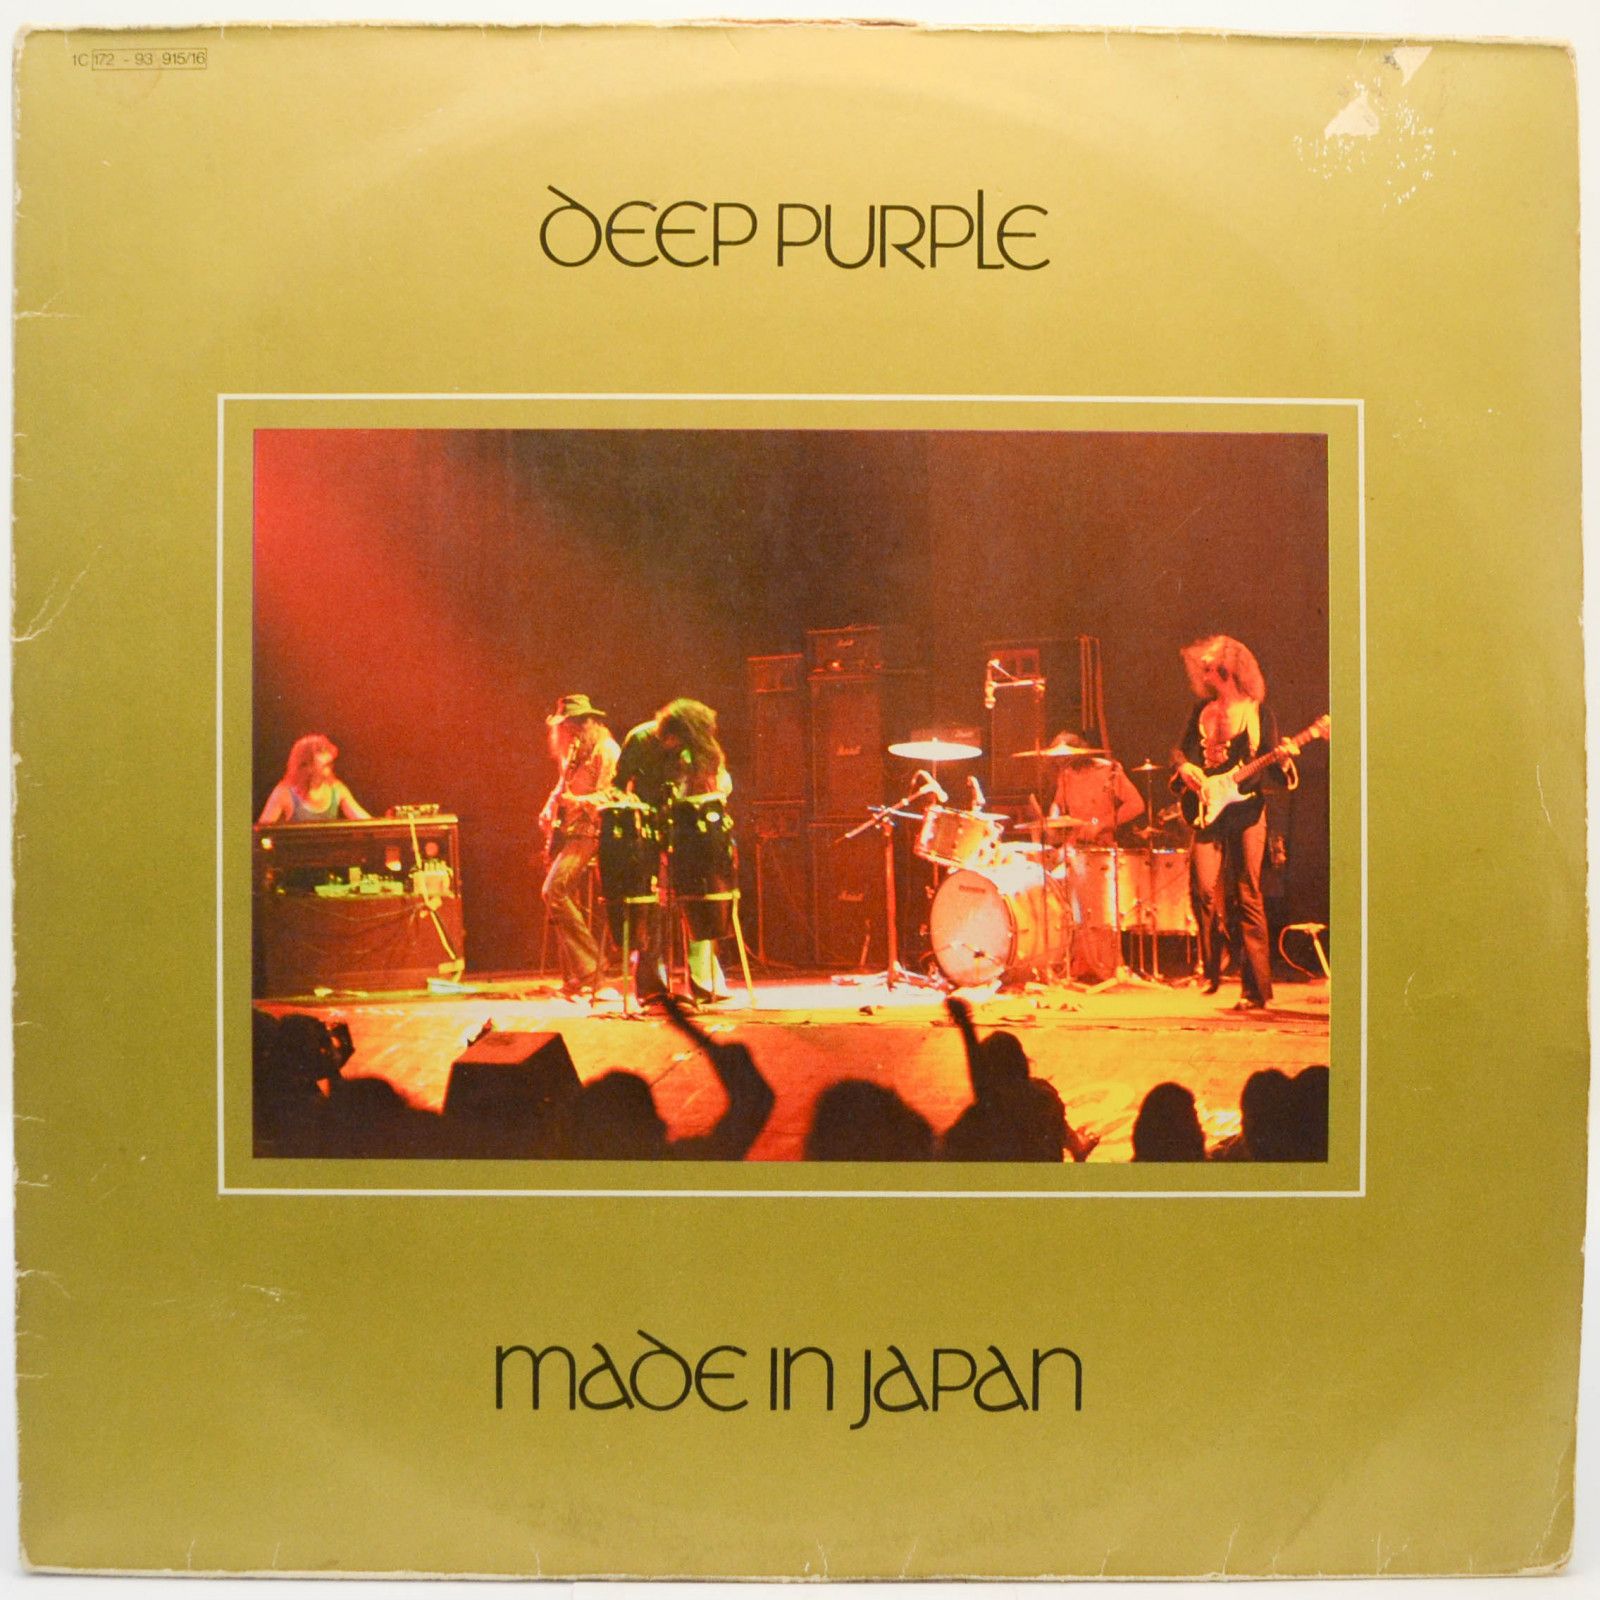 Deep Purple — Made In Japan (2LP), 1972